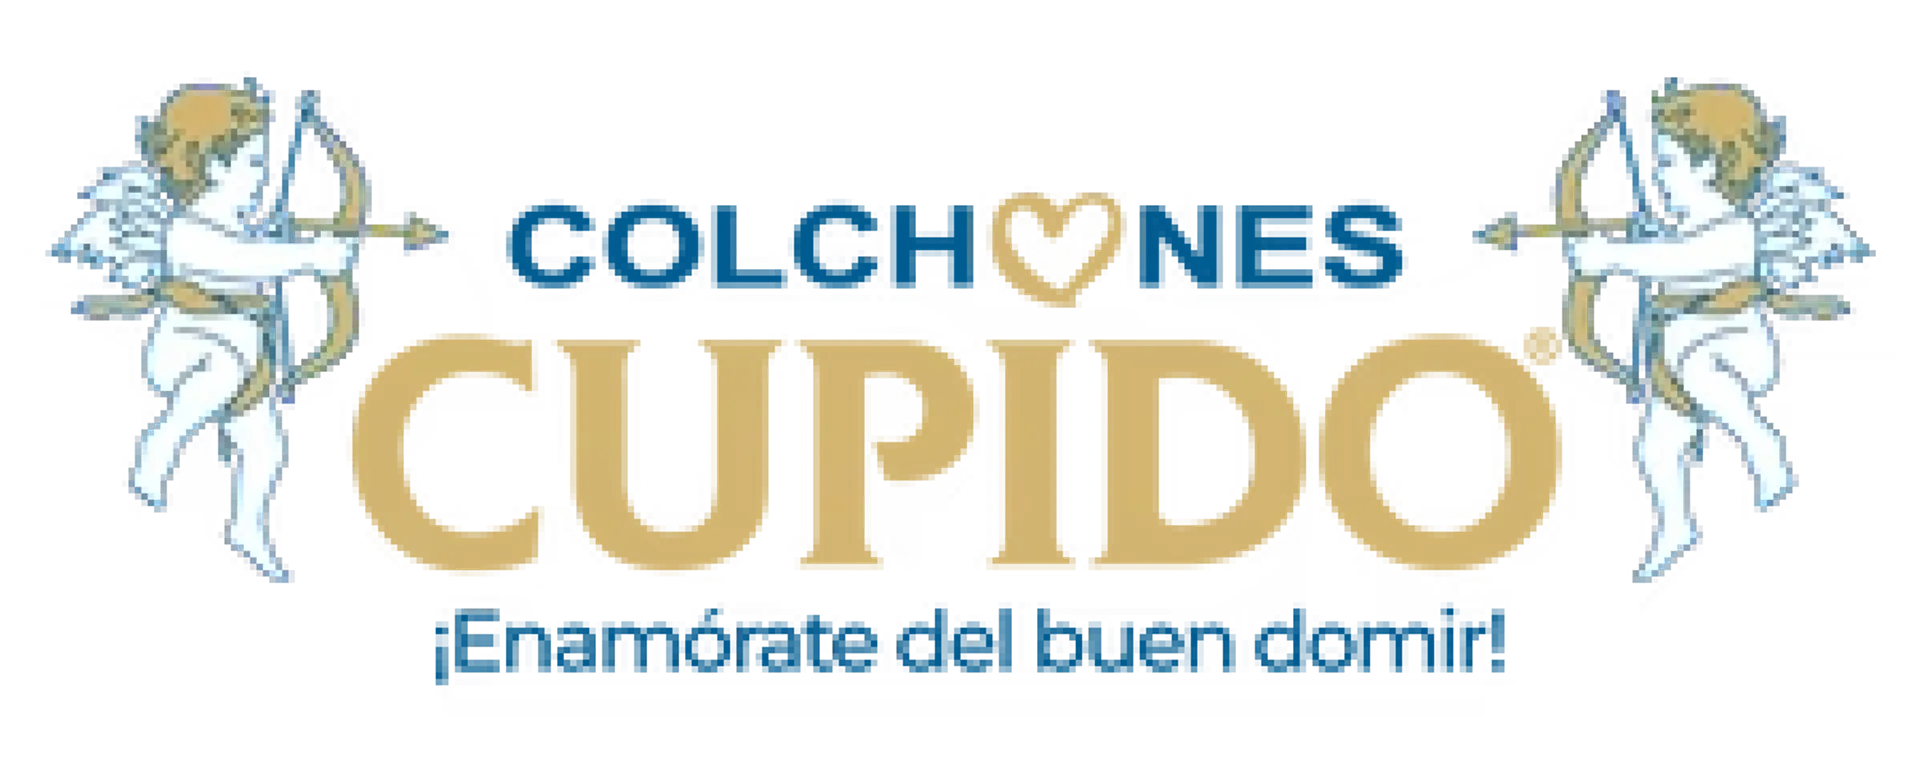 COLCHONES CUPIDO logo de catálogo